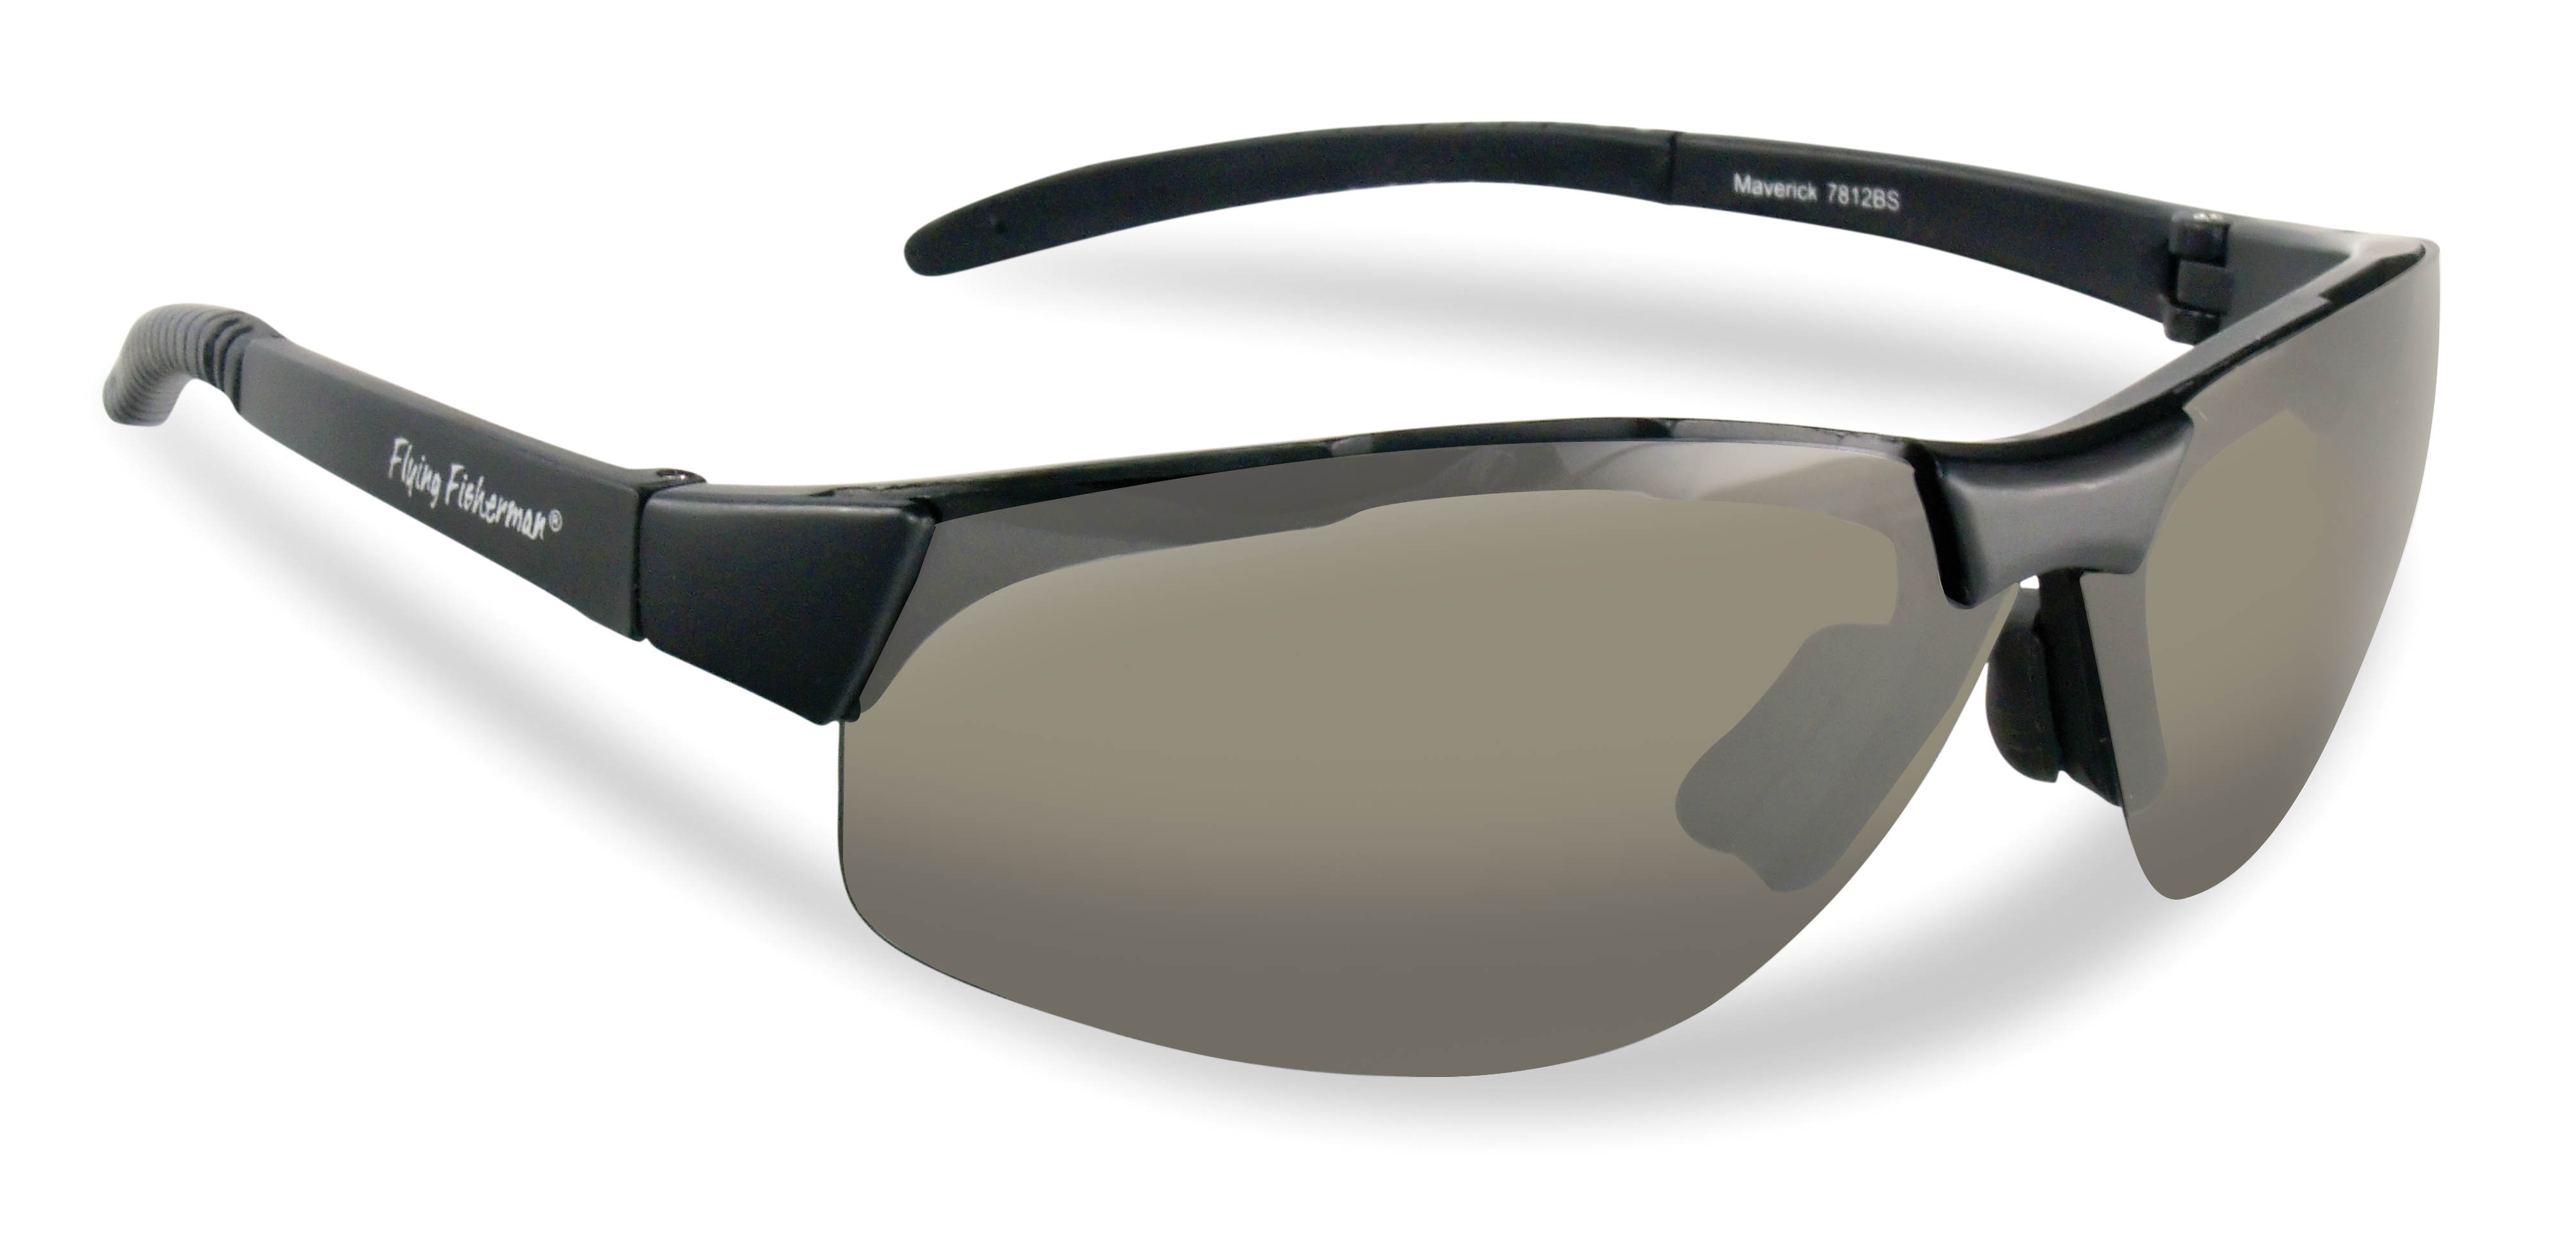 Flying Fisherman Maverick Polarized Sunglasses - Black/Smoke - image 1 of 2